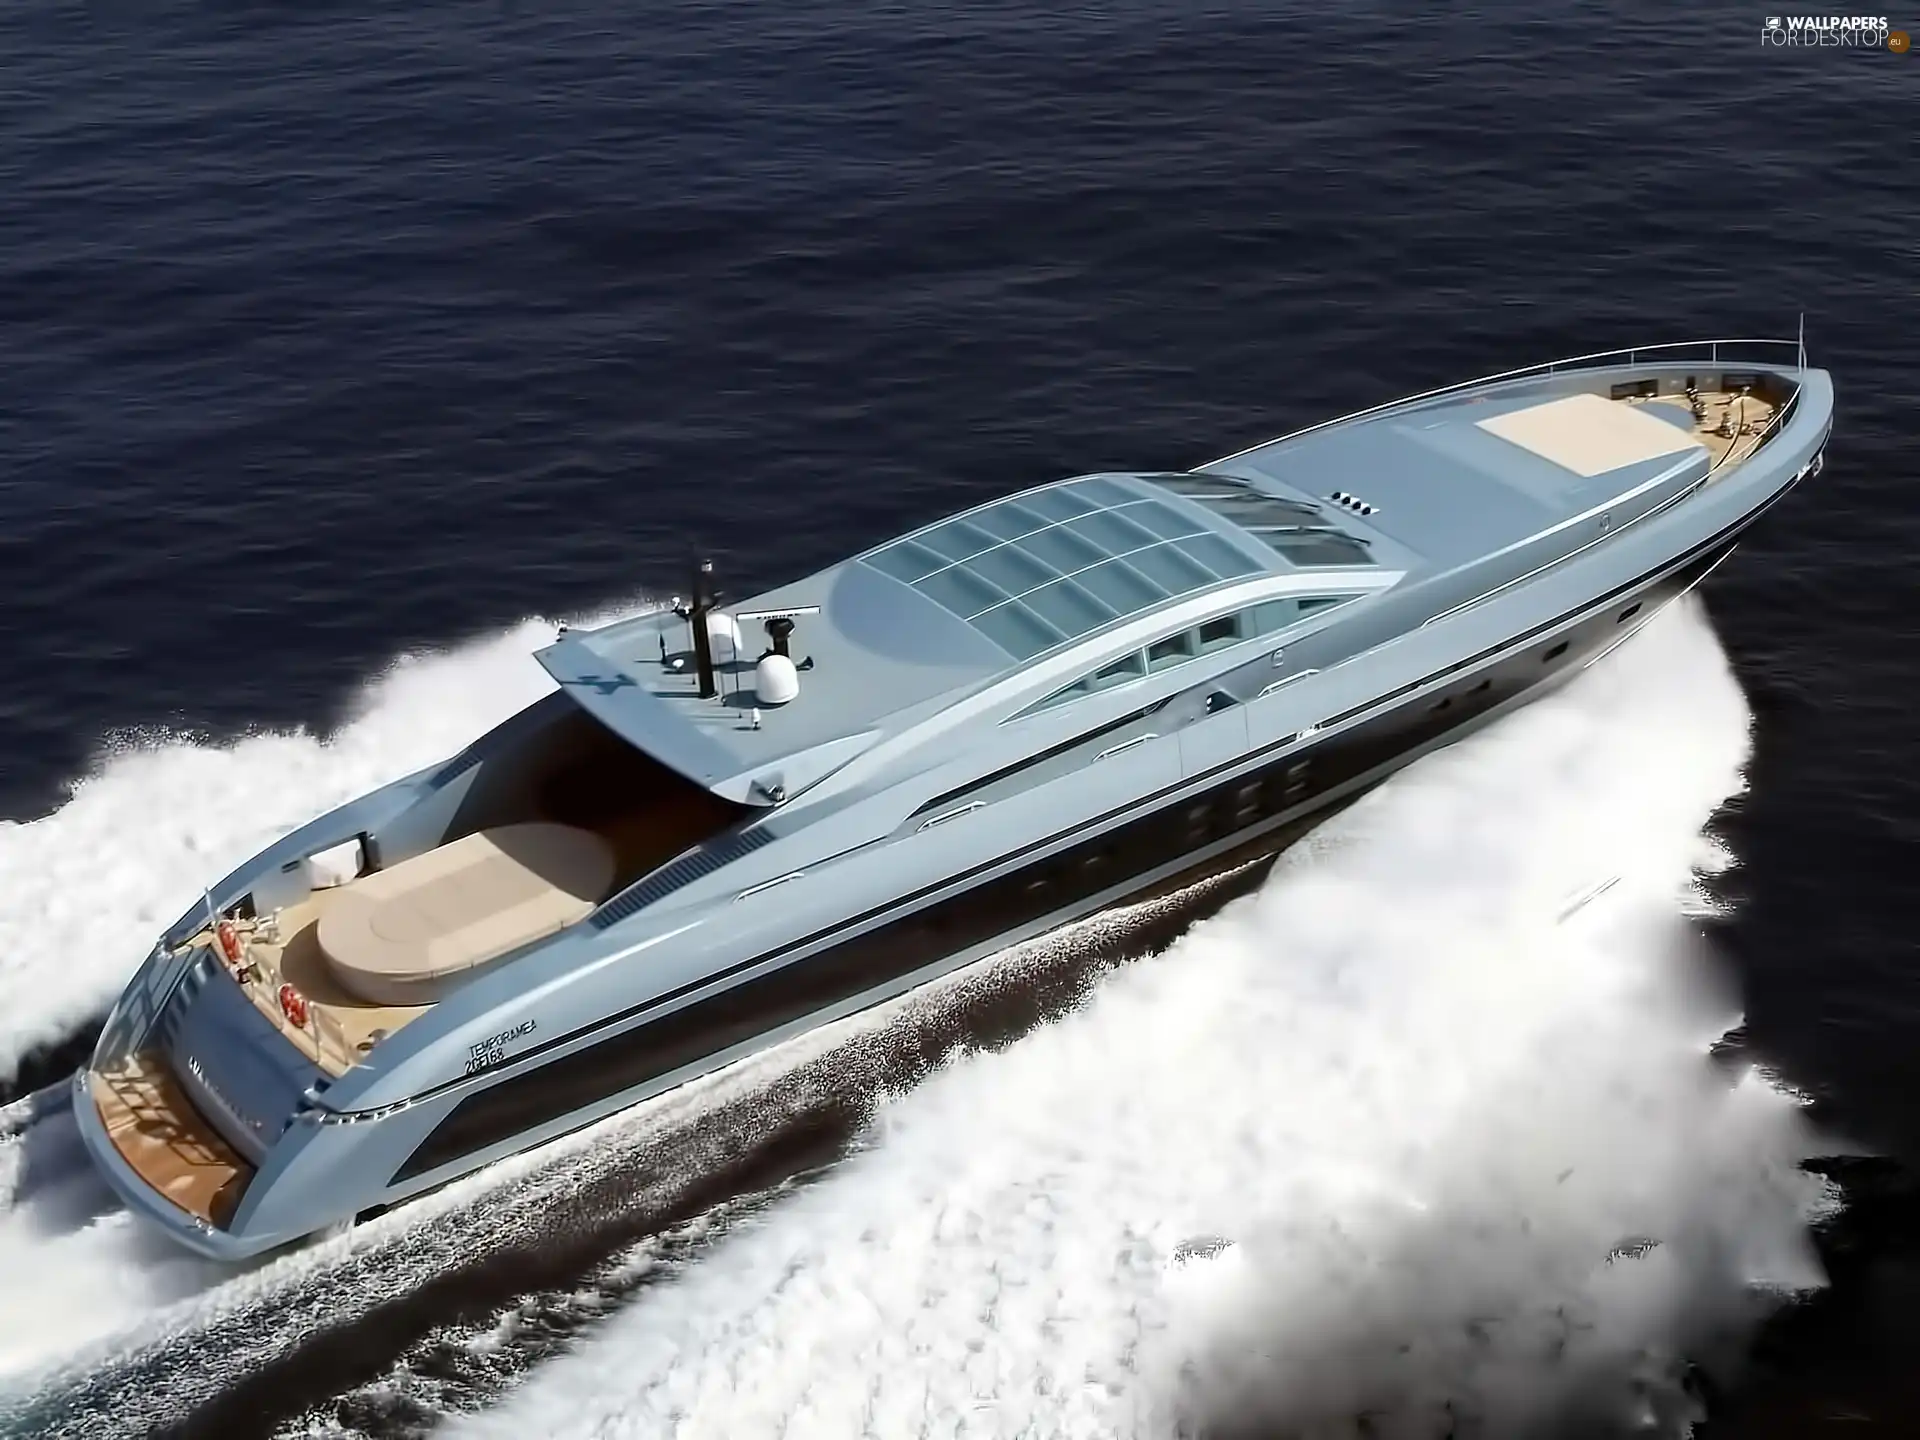 Fast, Mega yacht, sea, Luxury